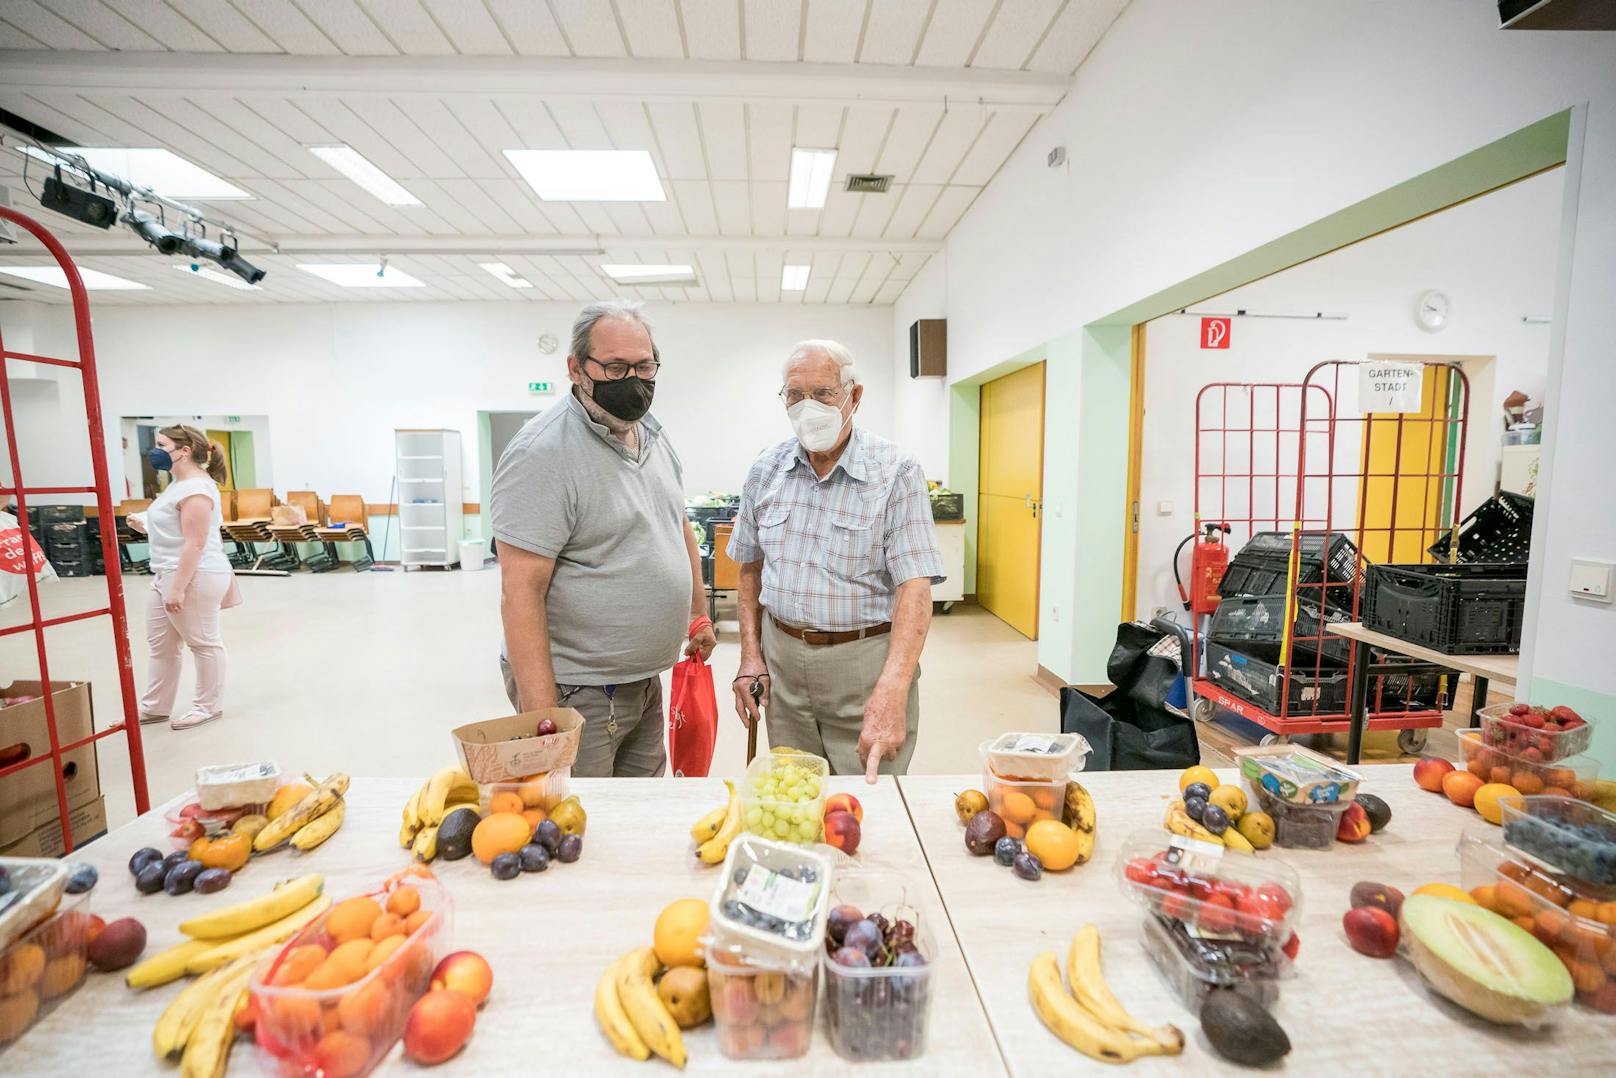 Wolfgang (60) und Rupert (94) kaufen regelmäßig bei der Lebensmittelausgabe ein – die Pension reicht nicht mehr.